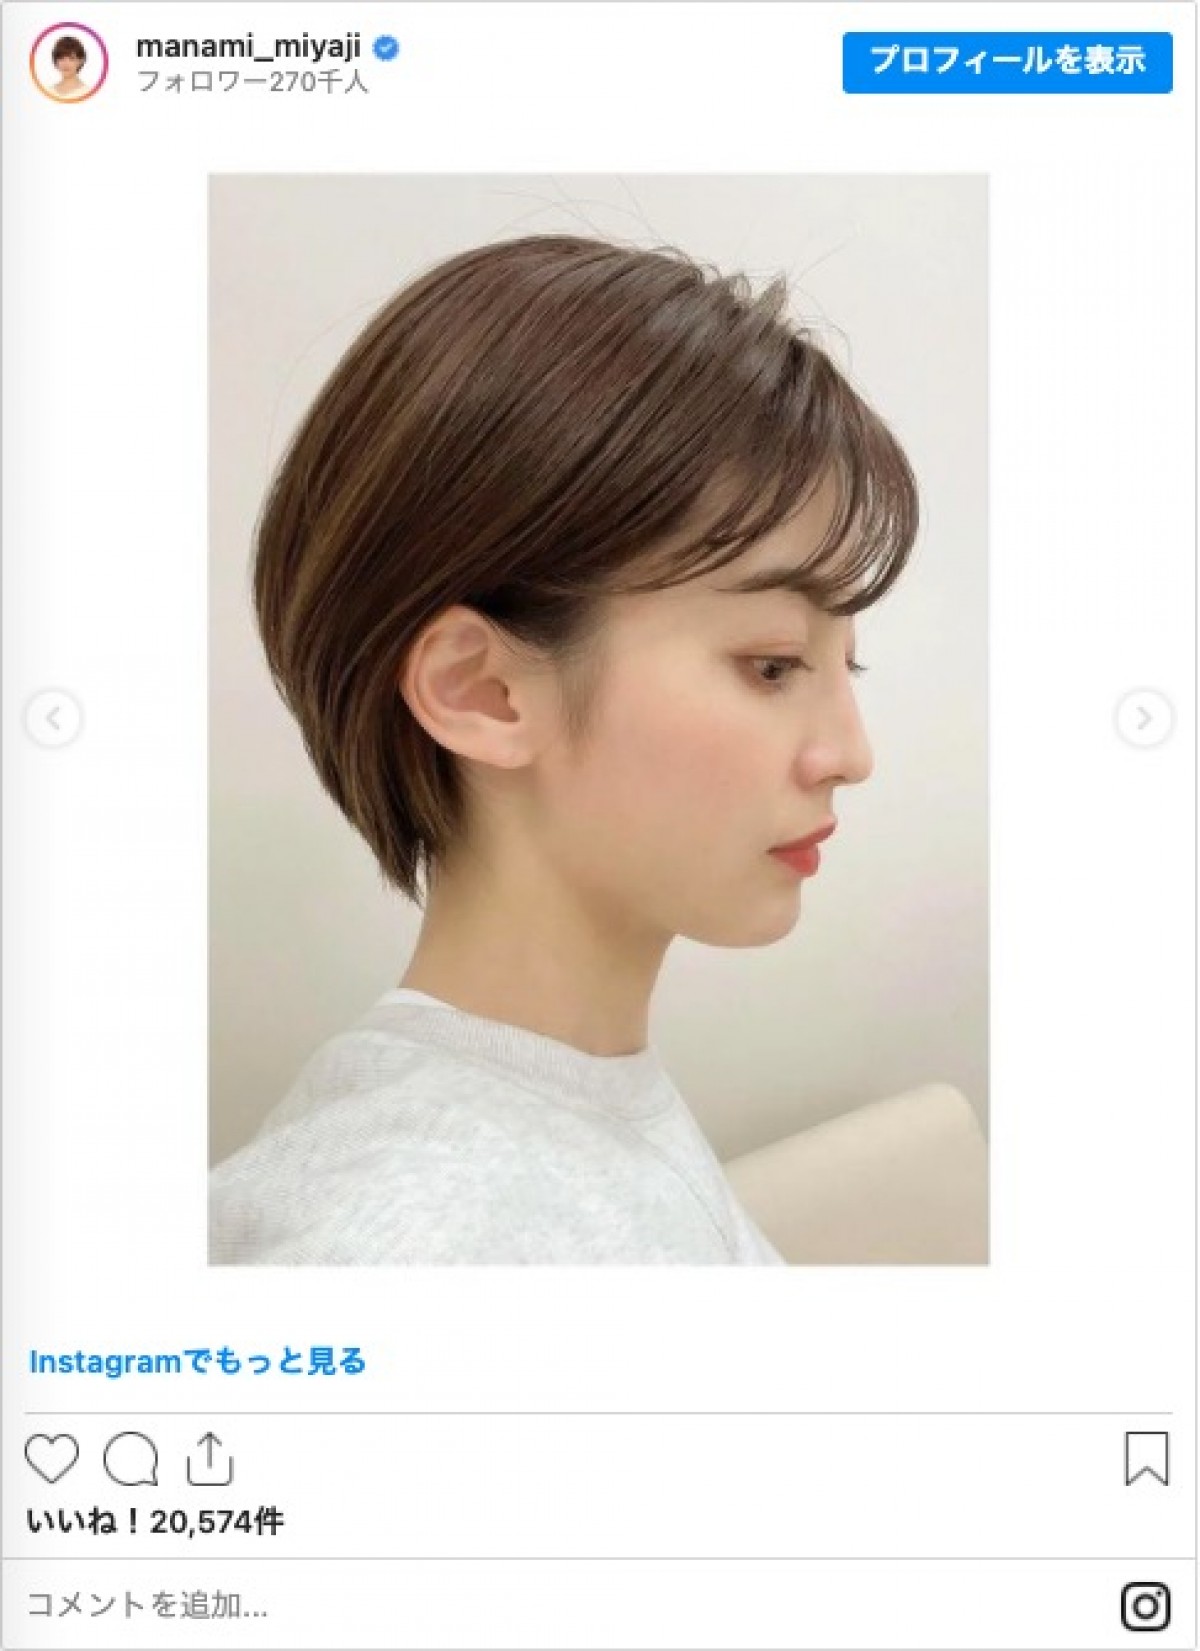 宮司愛海アナ、すっきりショートヘアに「美しい」「真似したい」と絶賛の声